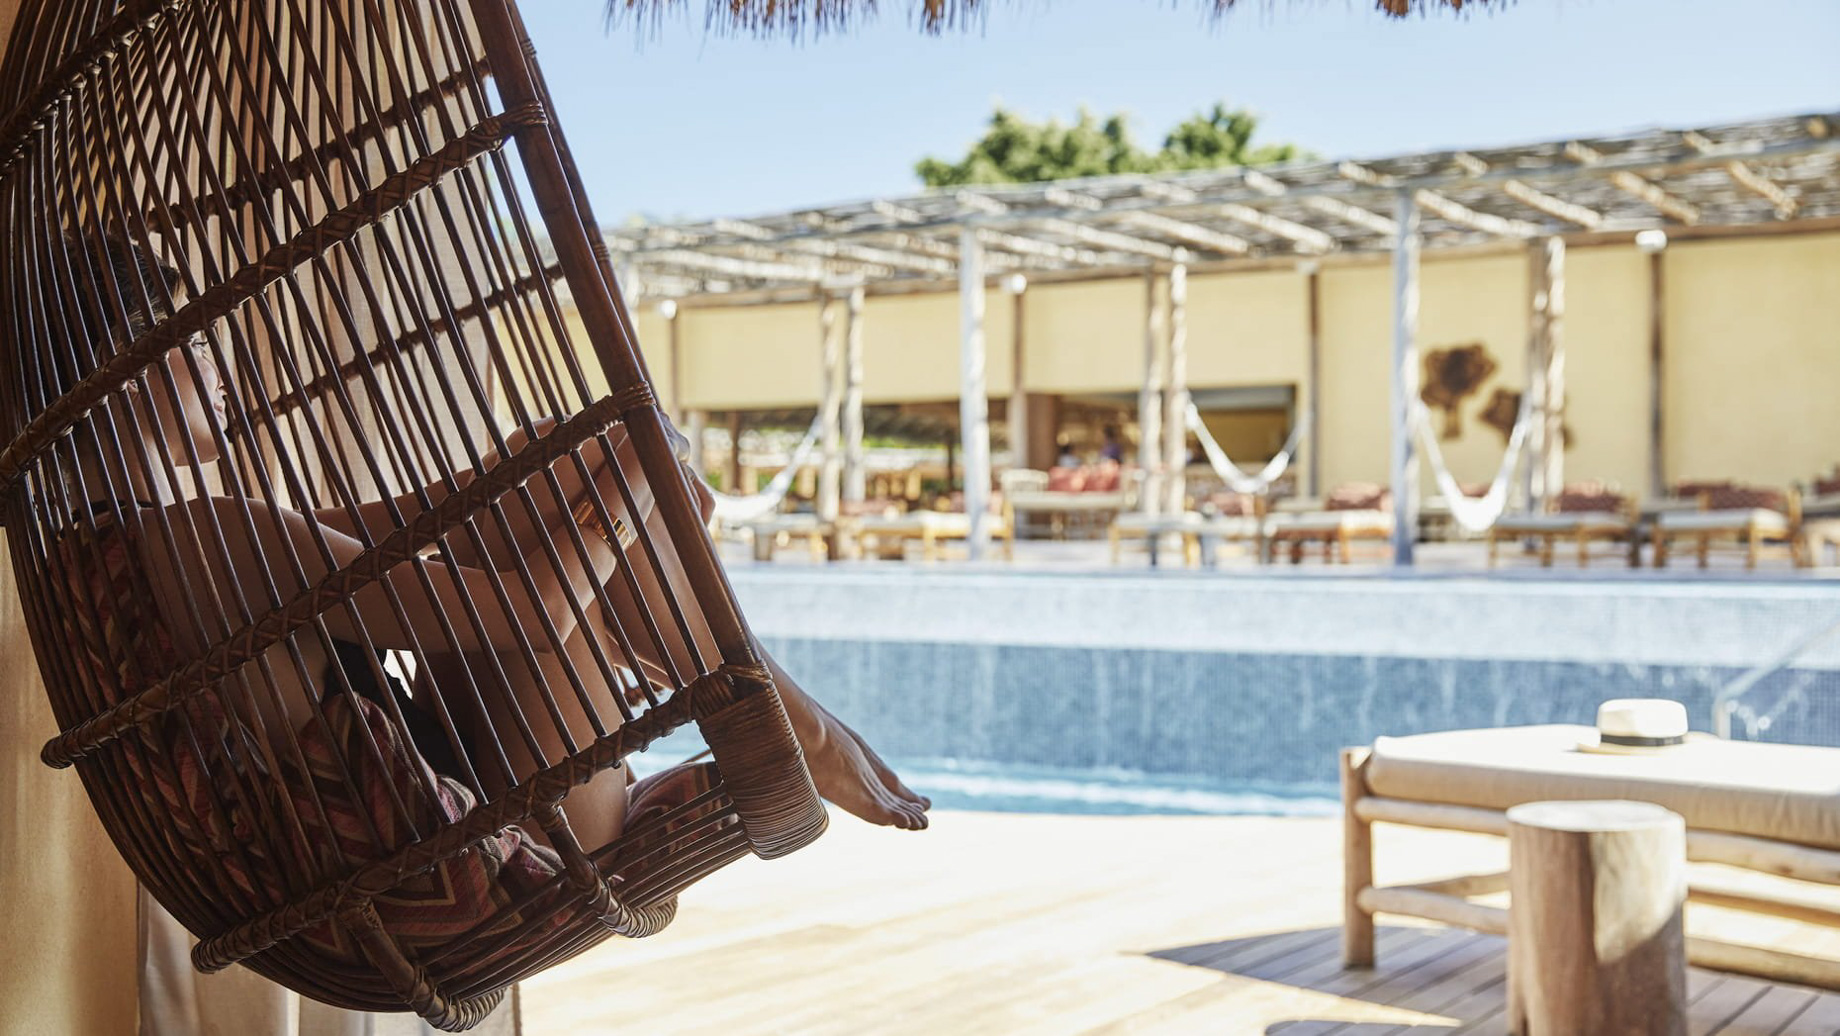 Four Seasons Resort Punta Mita – Nayarit, Mexico – Resort Pool Deck